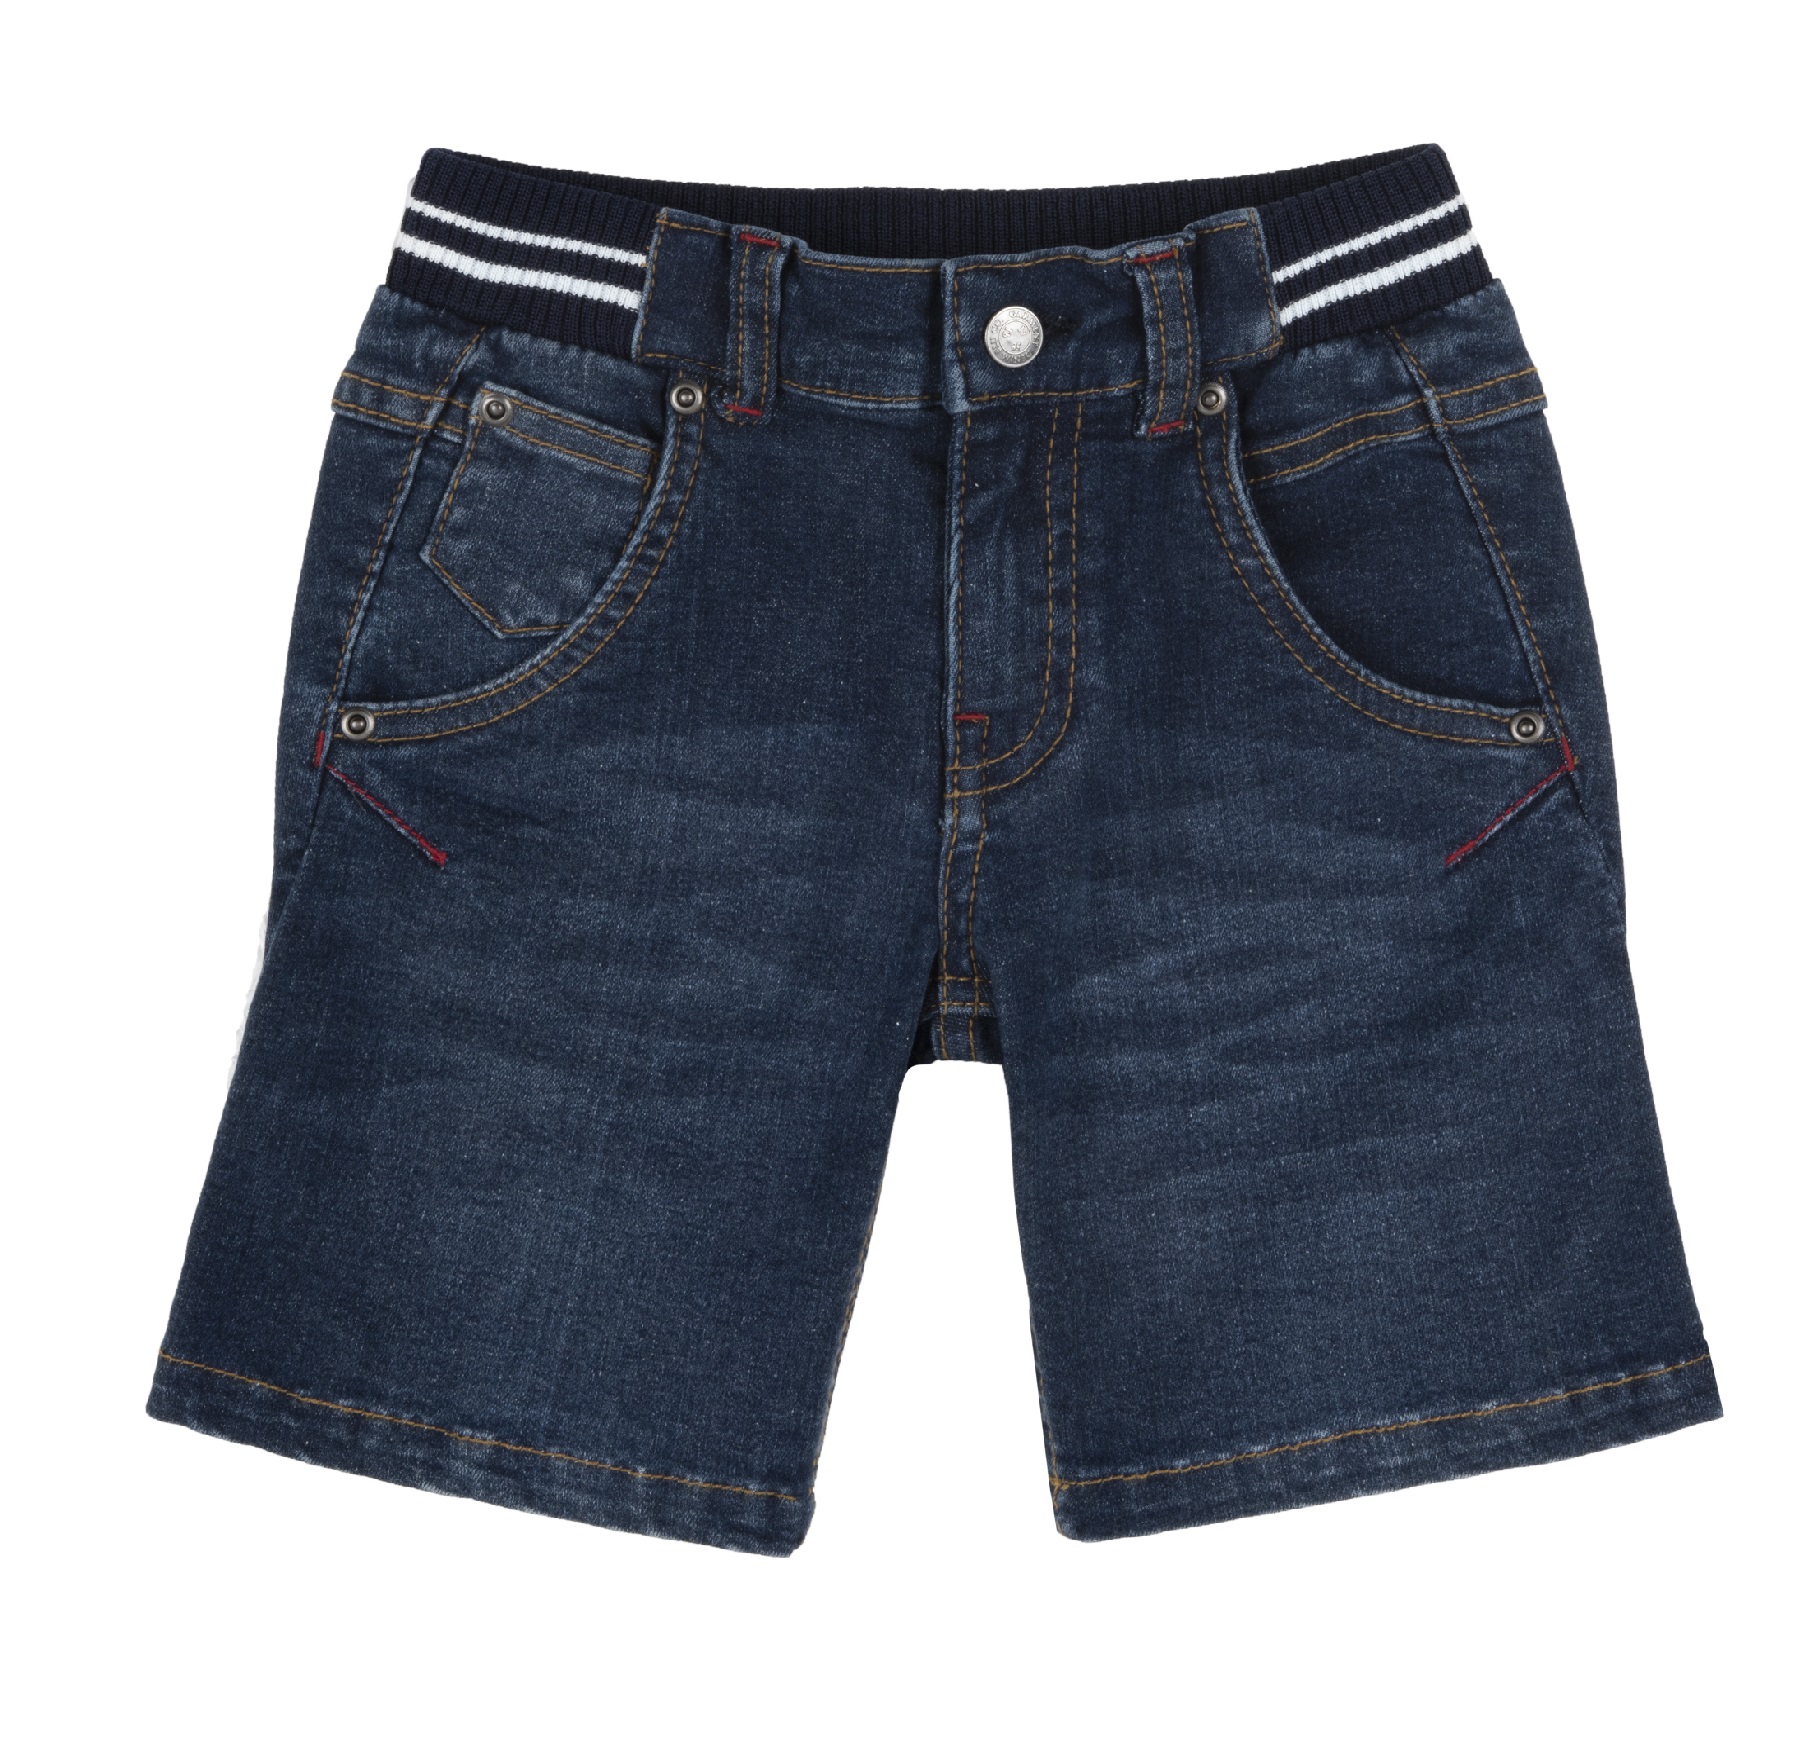 Pantaloni scurti copii Chicco, albastru inchis, 00484-62MC CHICCO